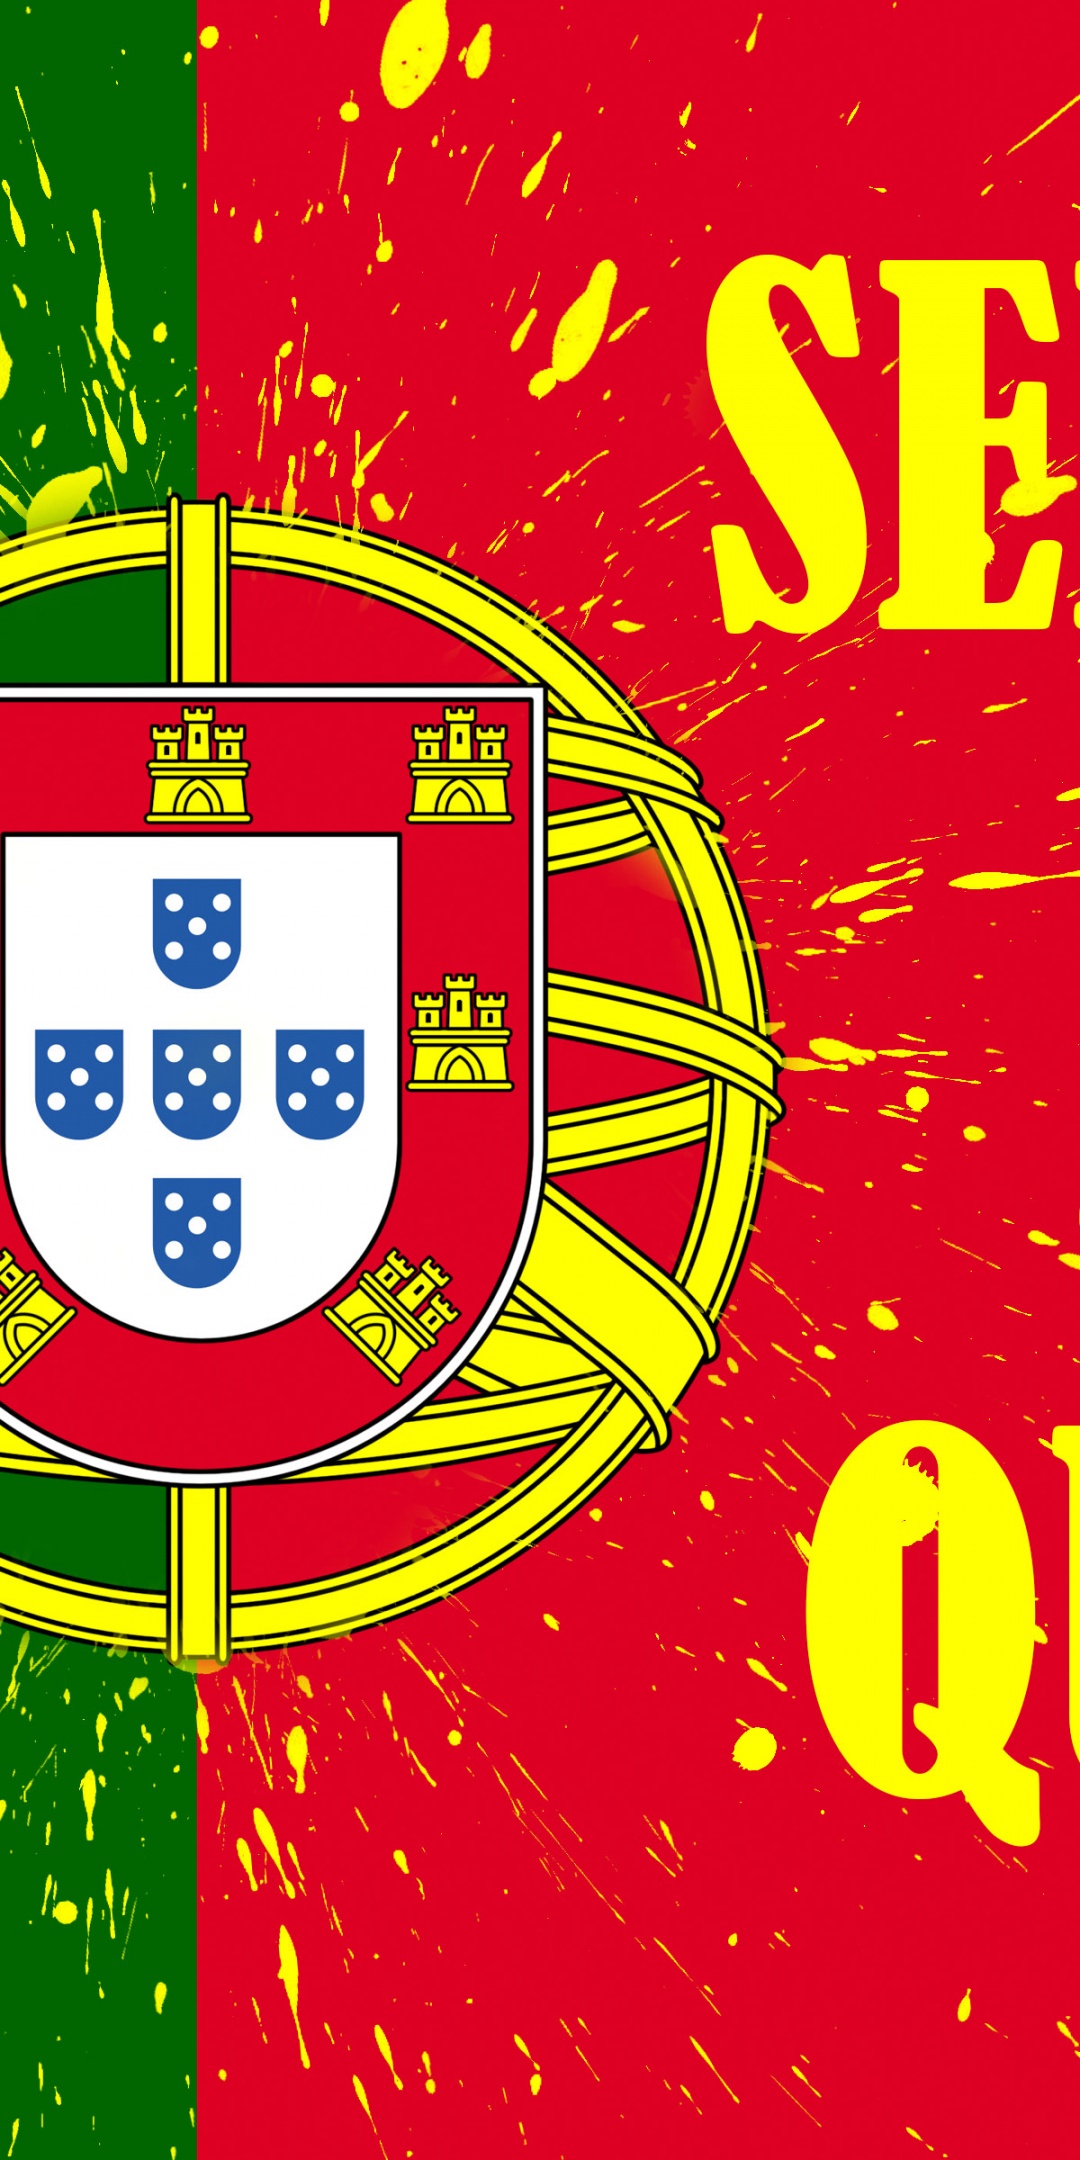 Selecao Das Quinas Portugal Football Logo